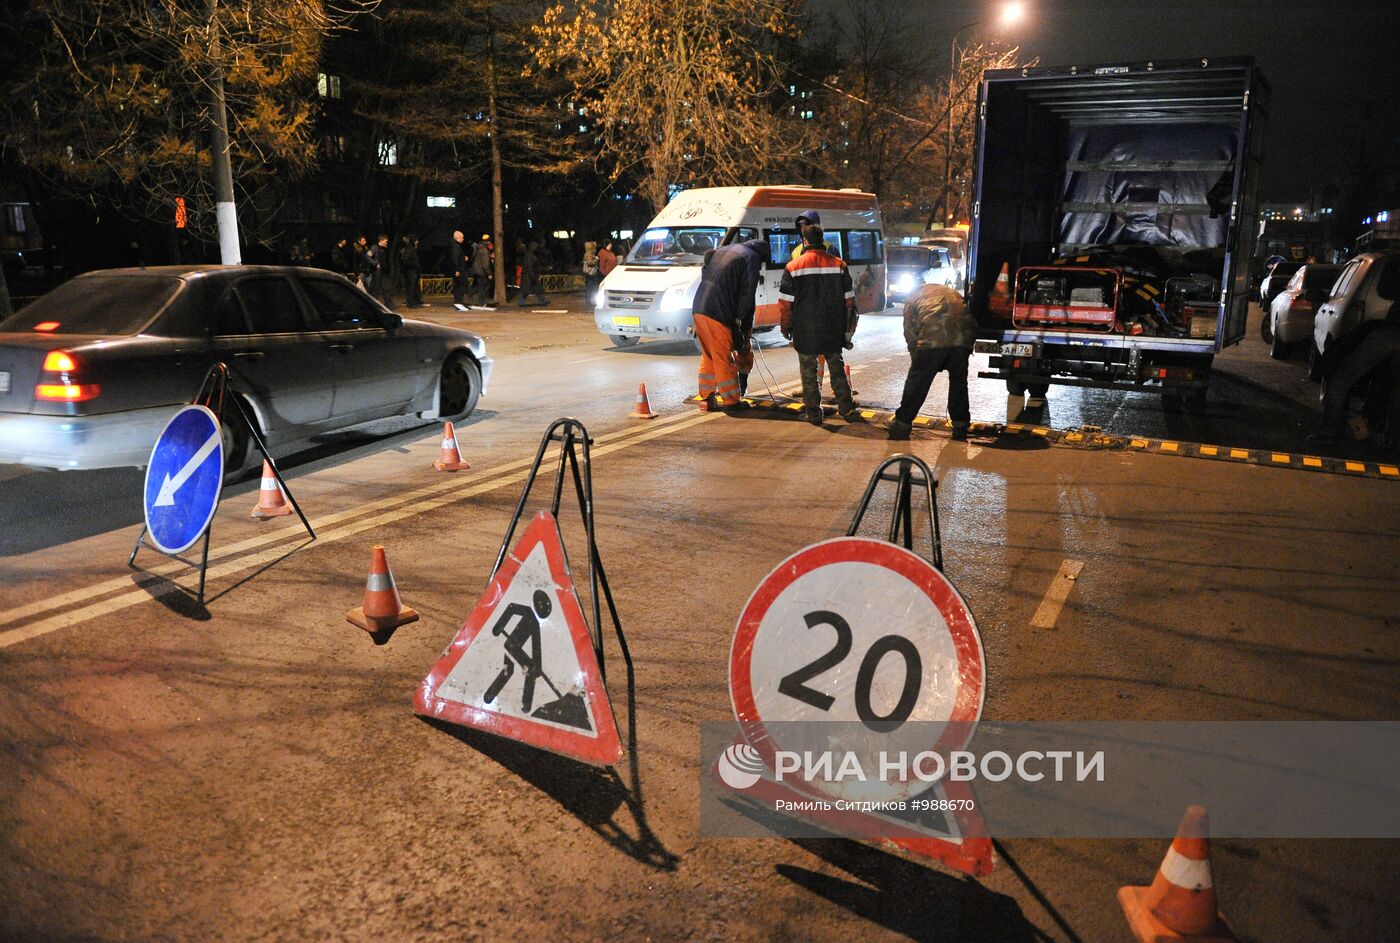 Установка "лежачих полицейских" на Бирюлевской улице